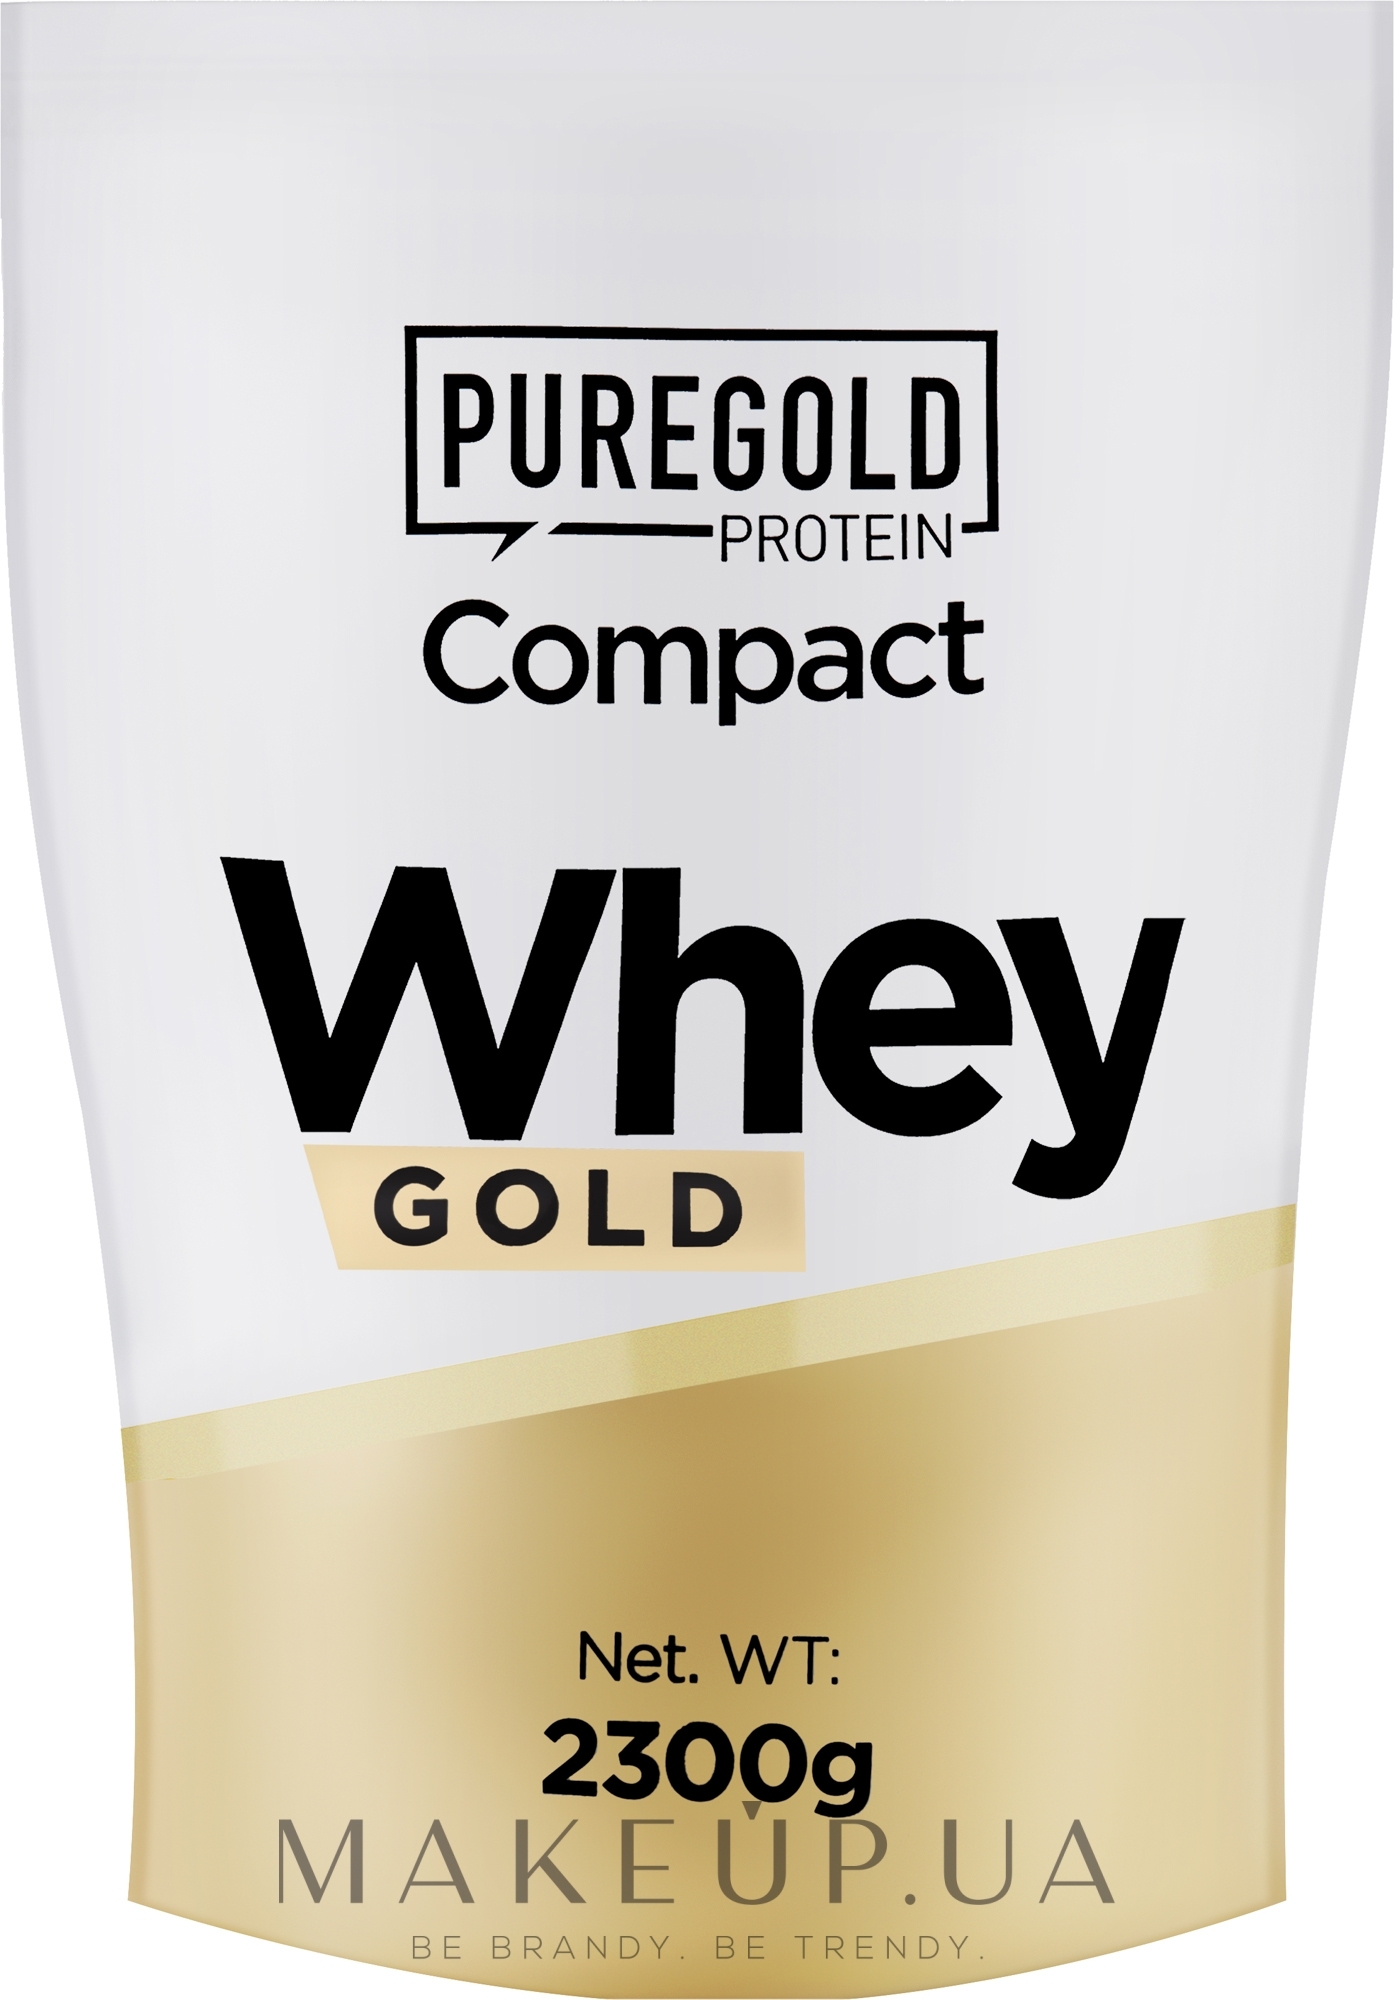 Сывороточный протеин "Фисташка" - PureGold Protein Compact Whey Gold Pistachio — фото 2300g